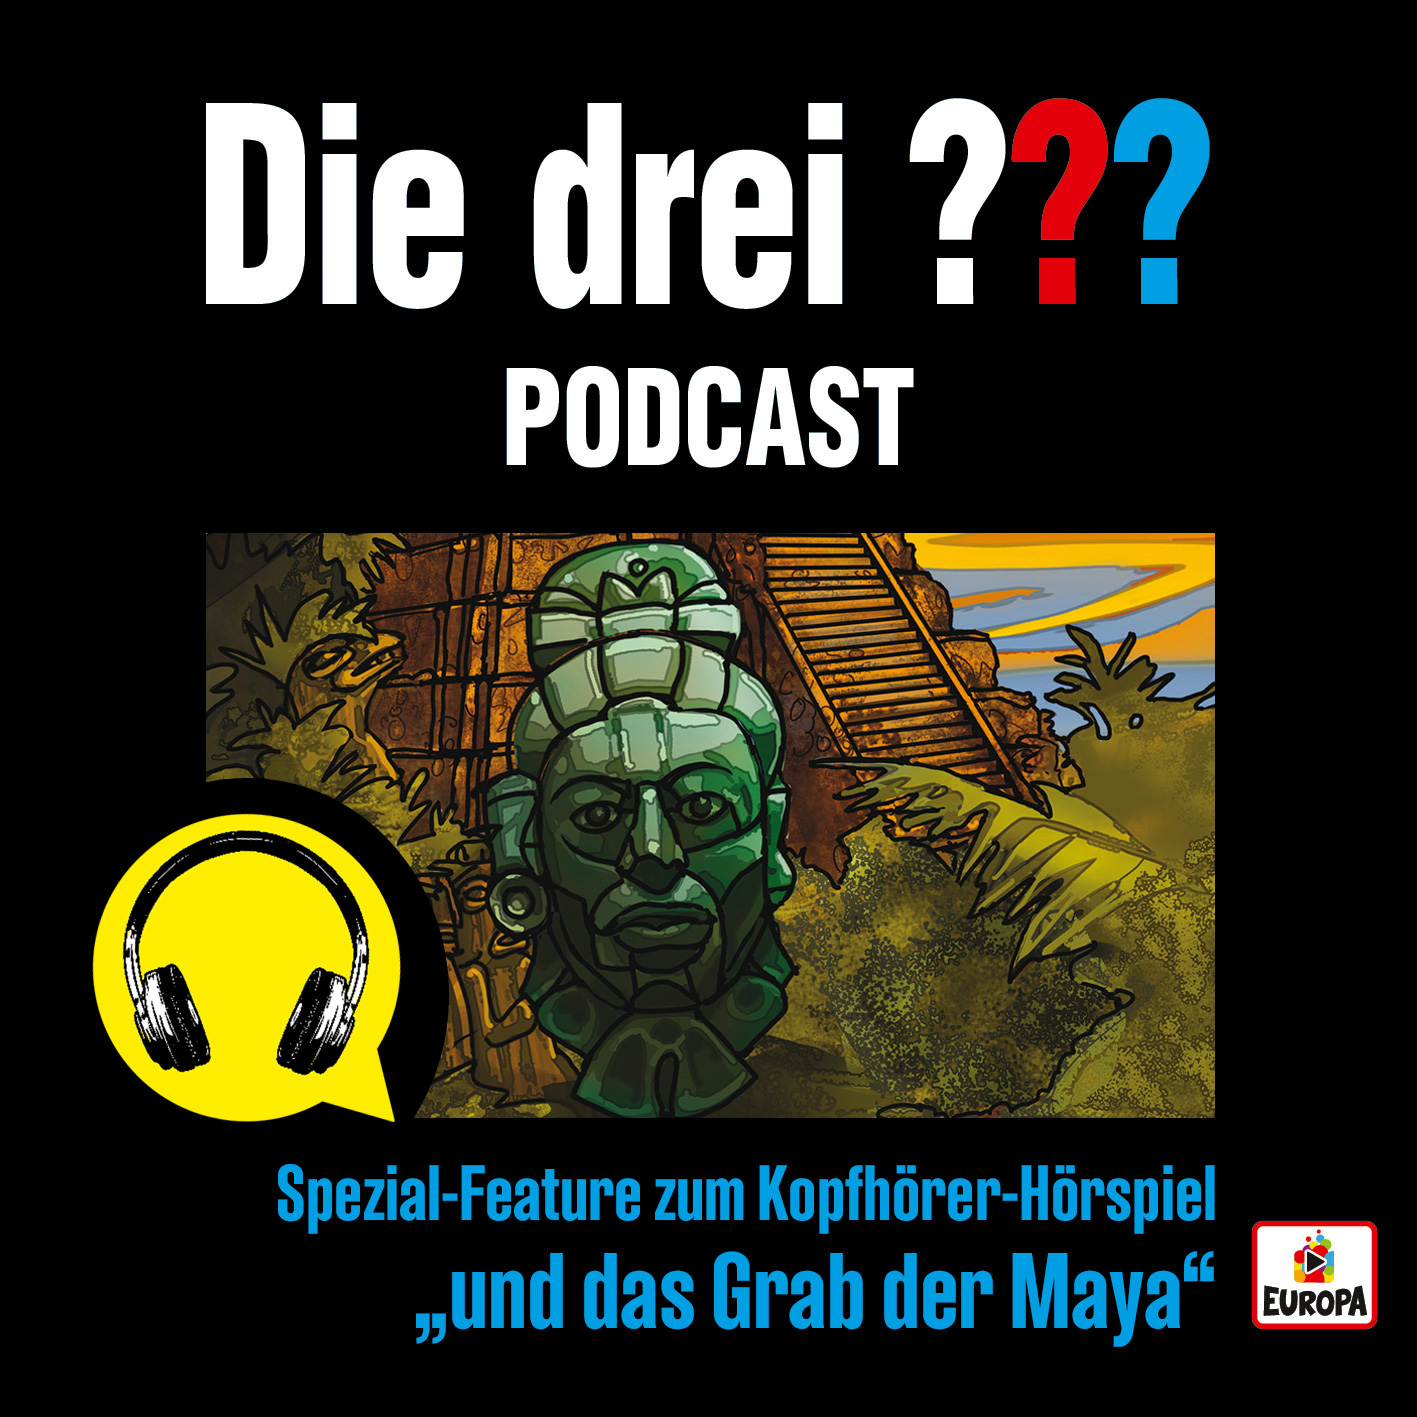 Die drei ??? - Podcast Spezial-Feature - Diesen Freitag kommt ein Spezial-Feature zum Kopfhörer-Hörspiel und das Grab ...